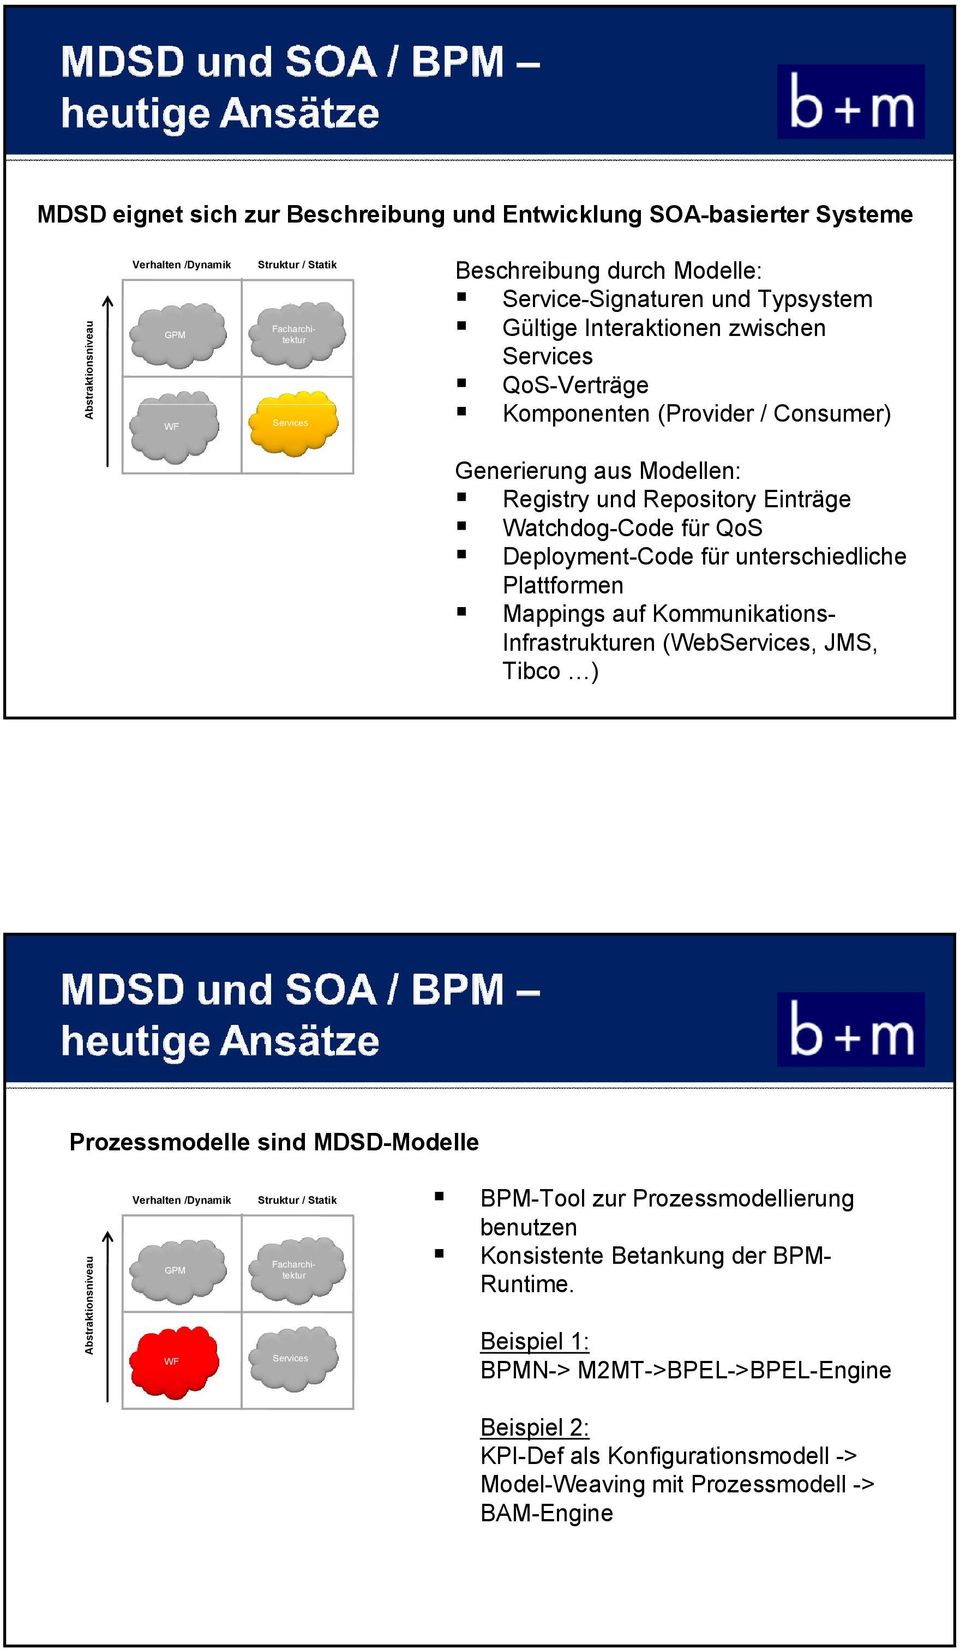 unterschiedliche Plattformen Mappings auf Kommunikations- Infrastrukturen (Web, JMS, Tibco ) Prozessmodelle sind MDSD-Modelle Abstraktionsniveau Verhalten /Dynamik GPM WF Struktur / Statik